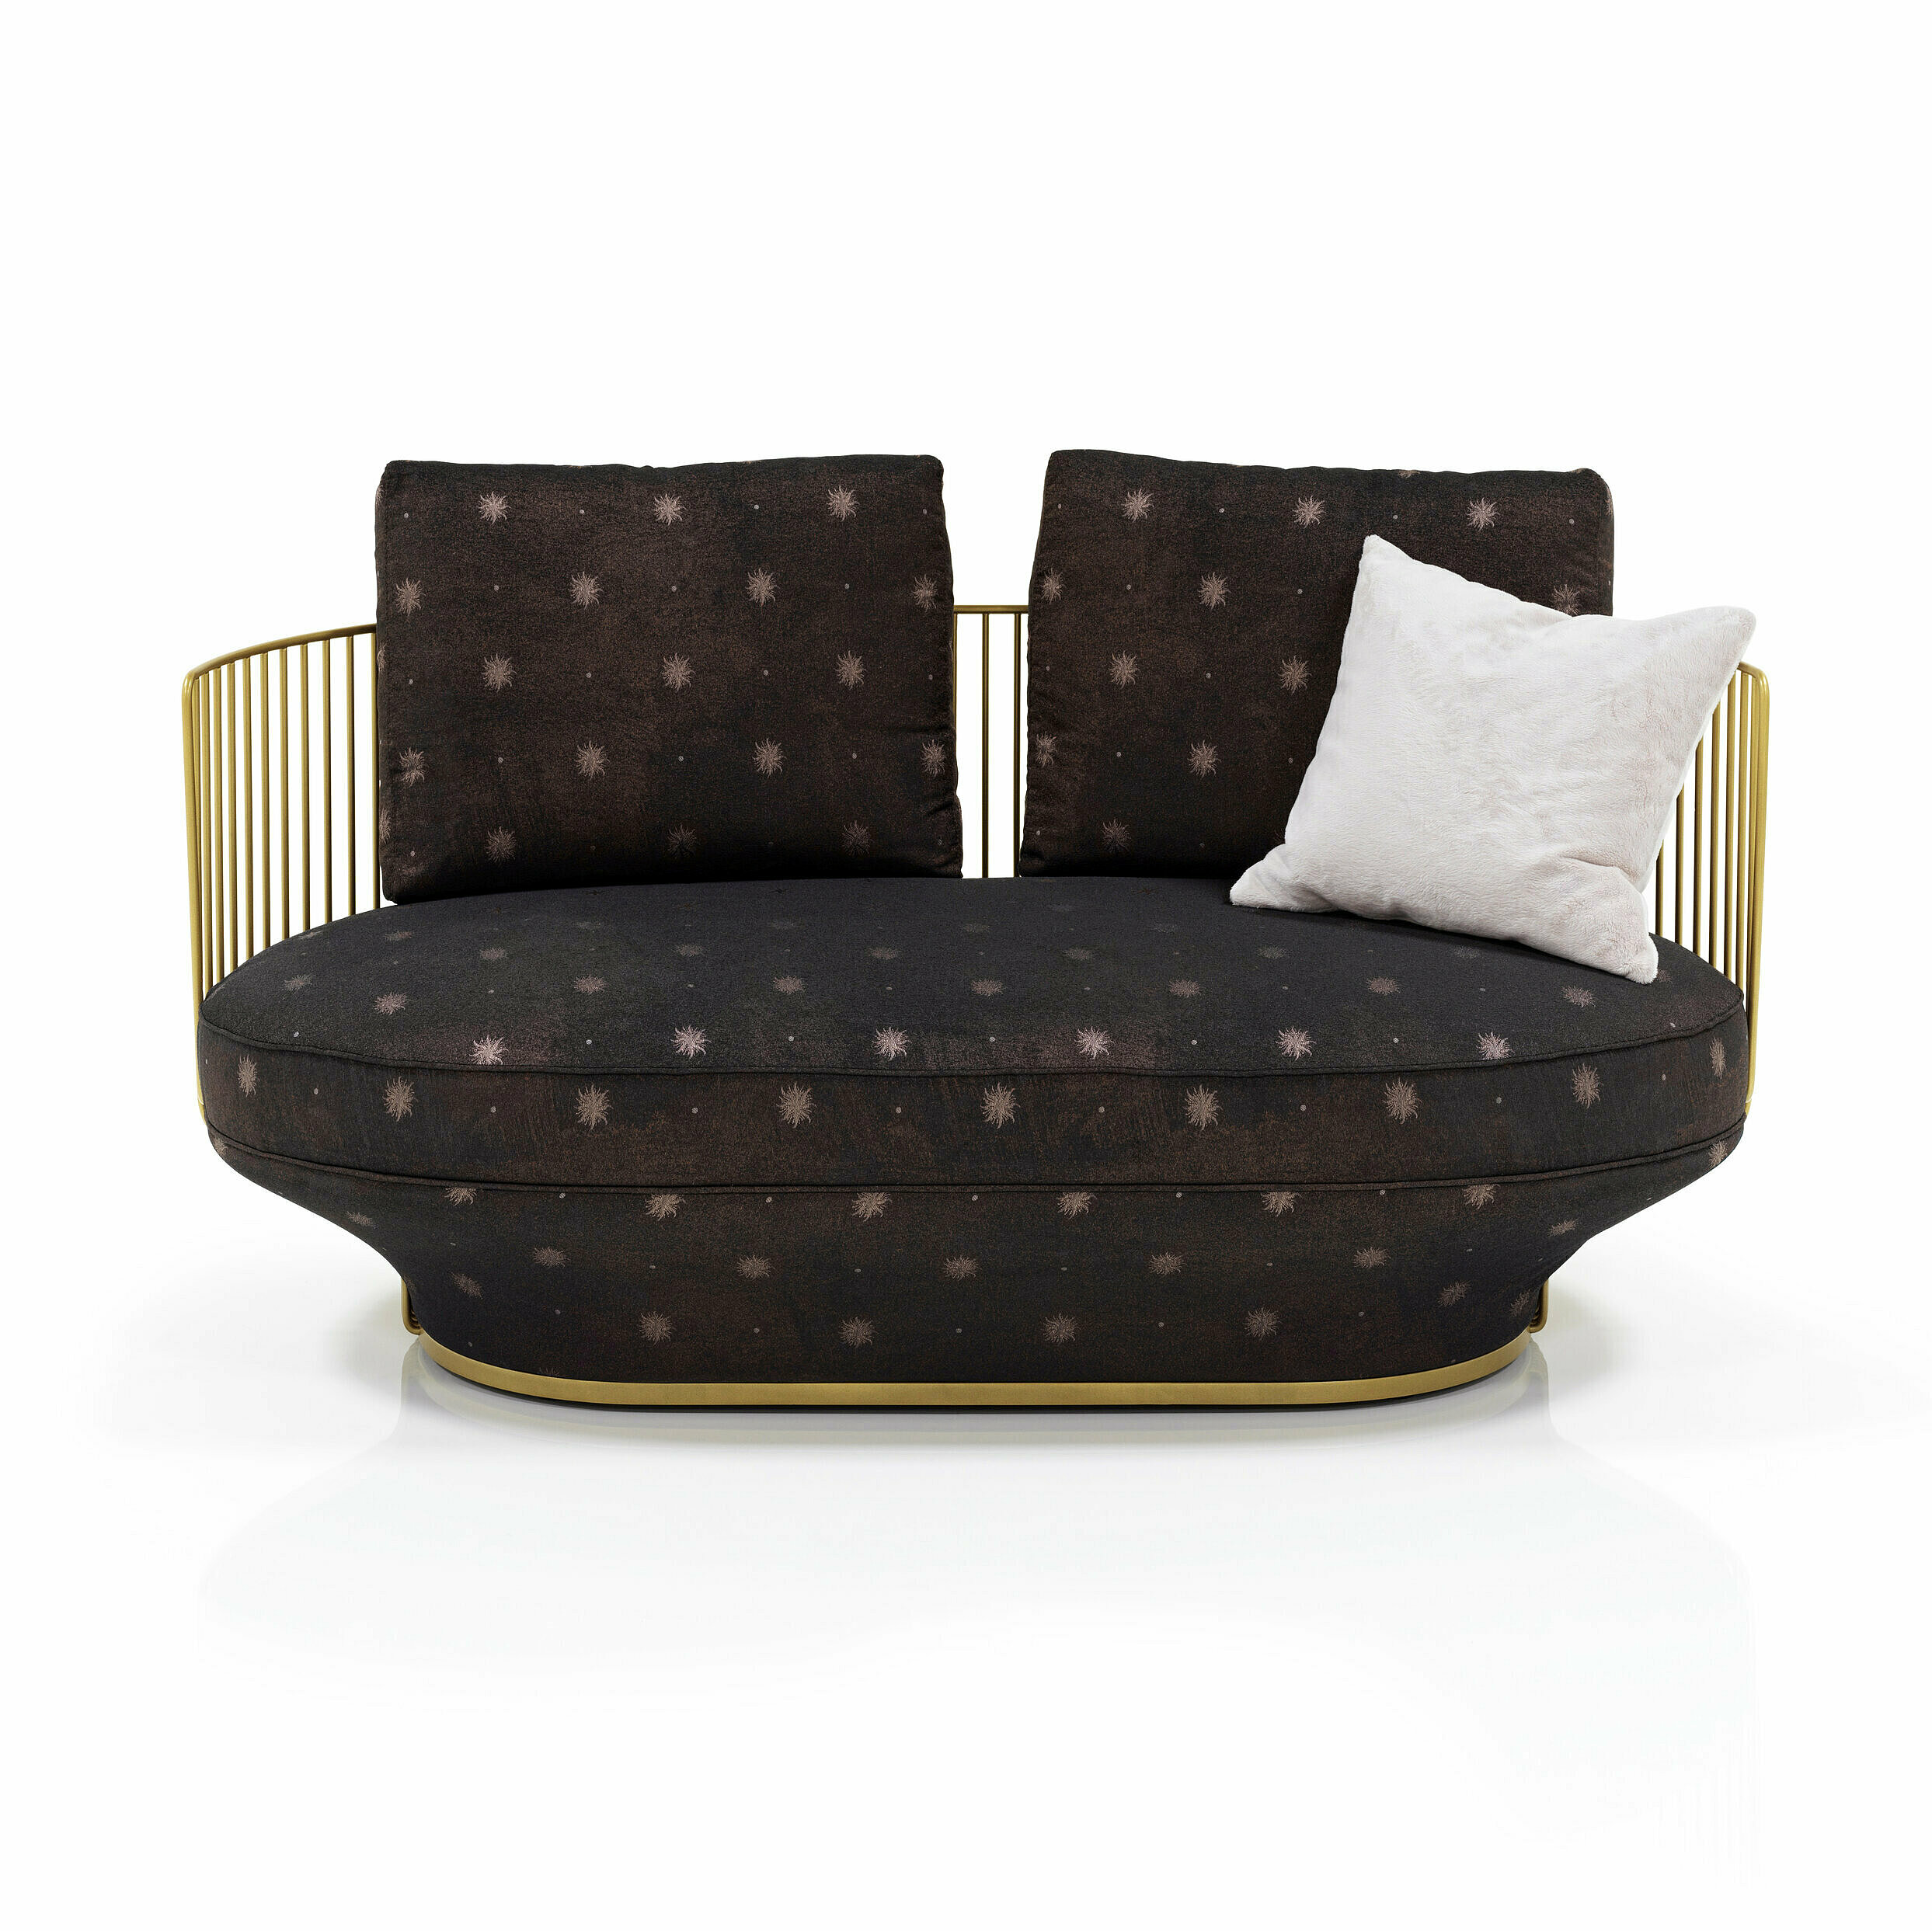 Zweisitziges Sofa mit Metallgerüst und mit braunem Brokat mit Sternmuster bezogenen Sitzkissen